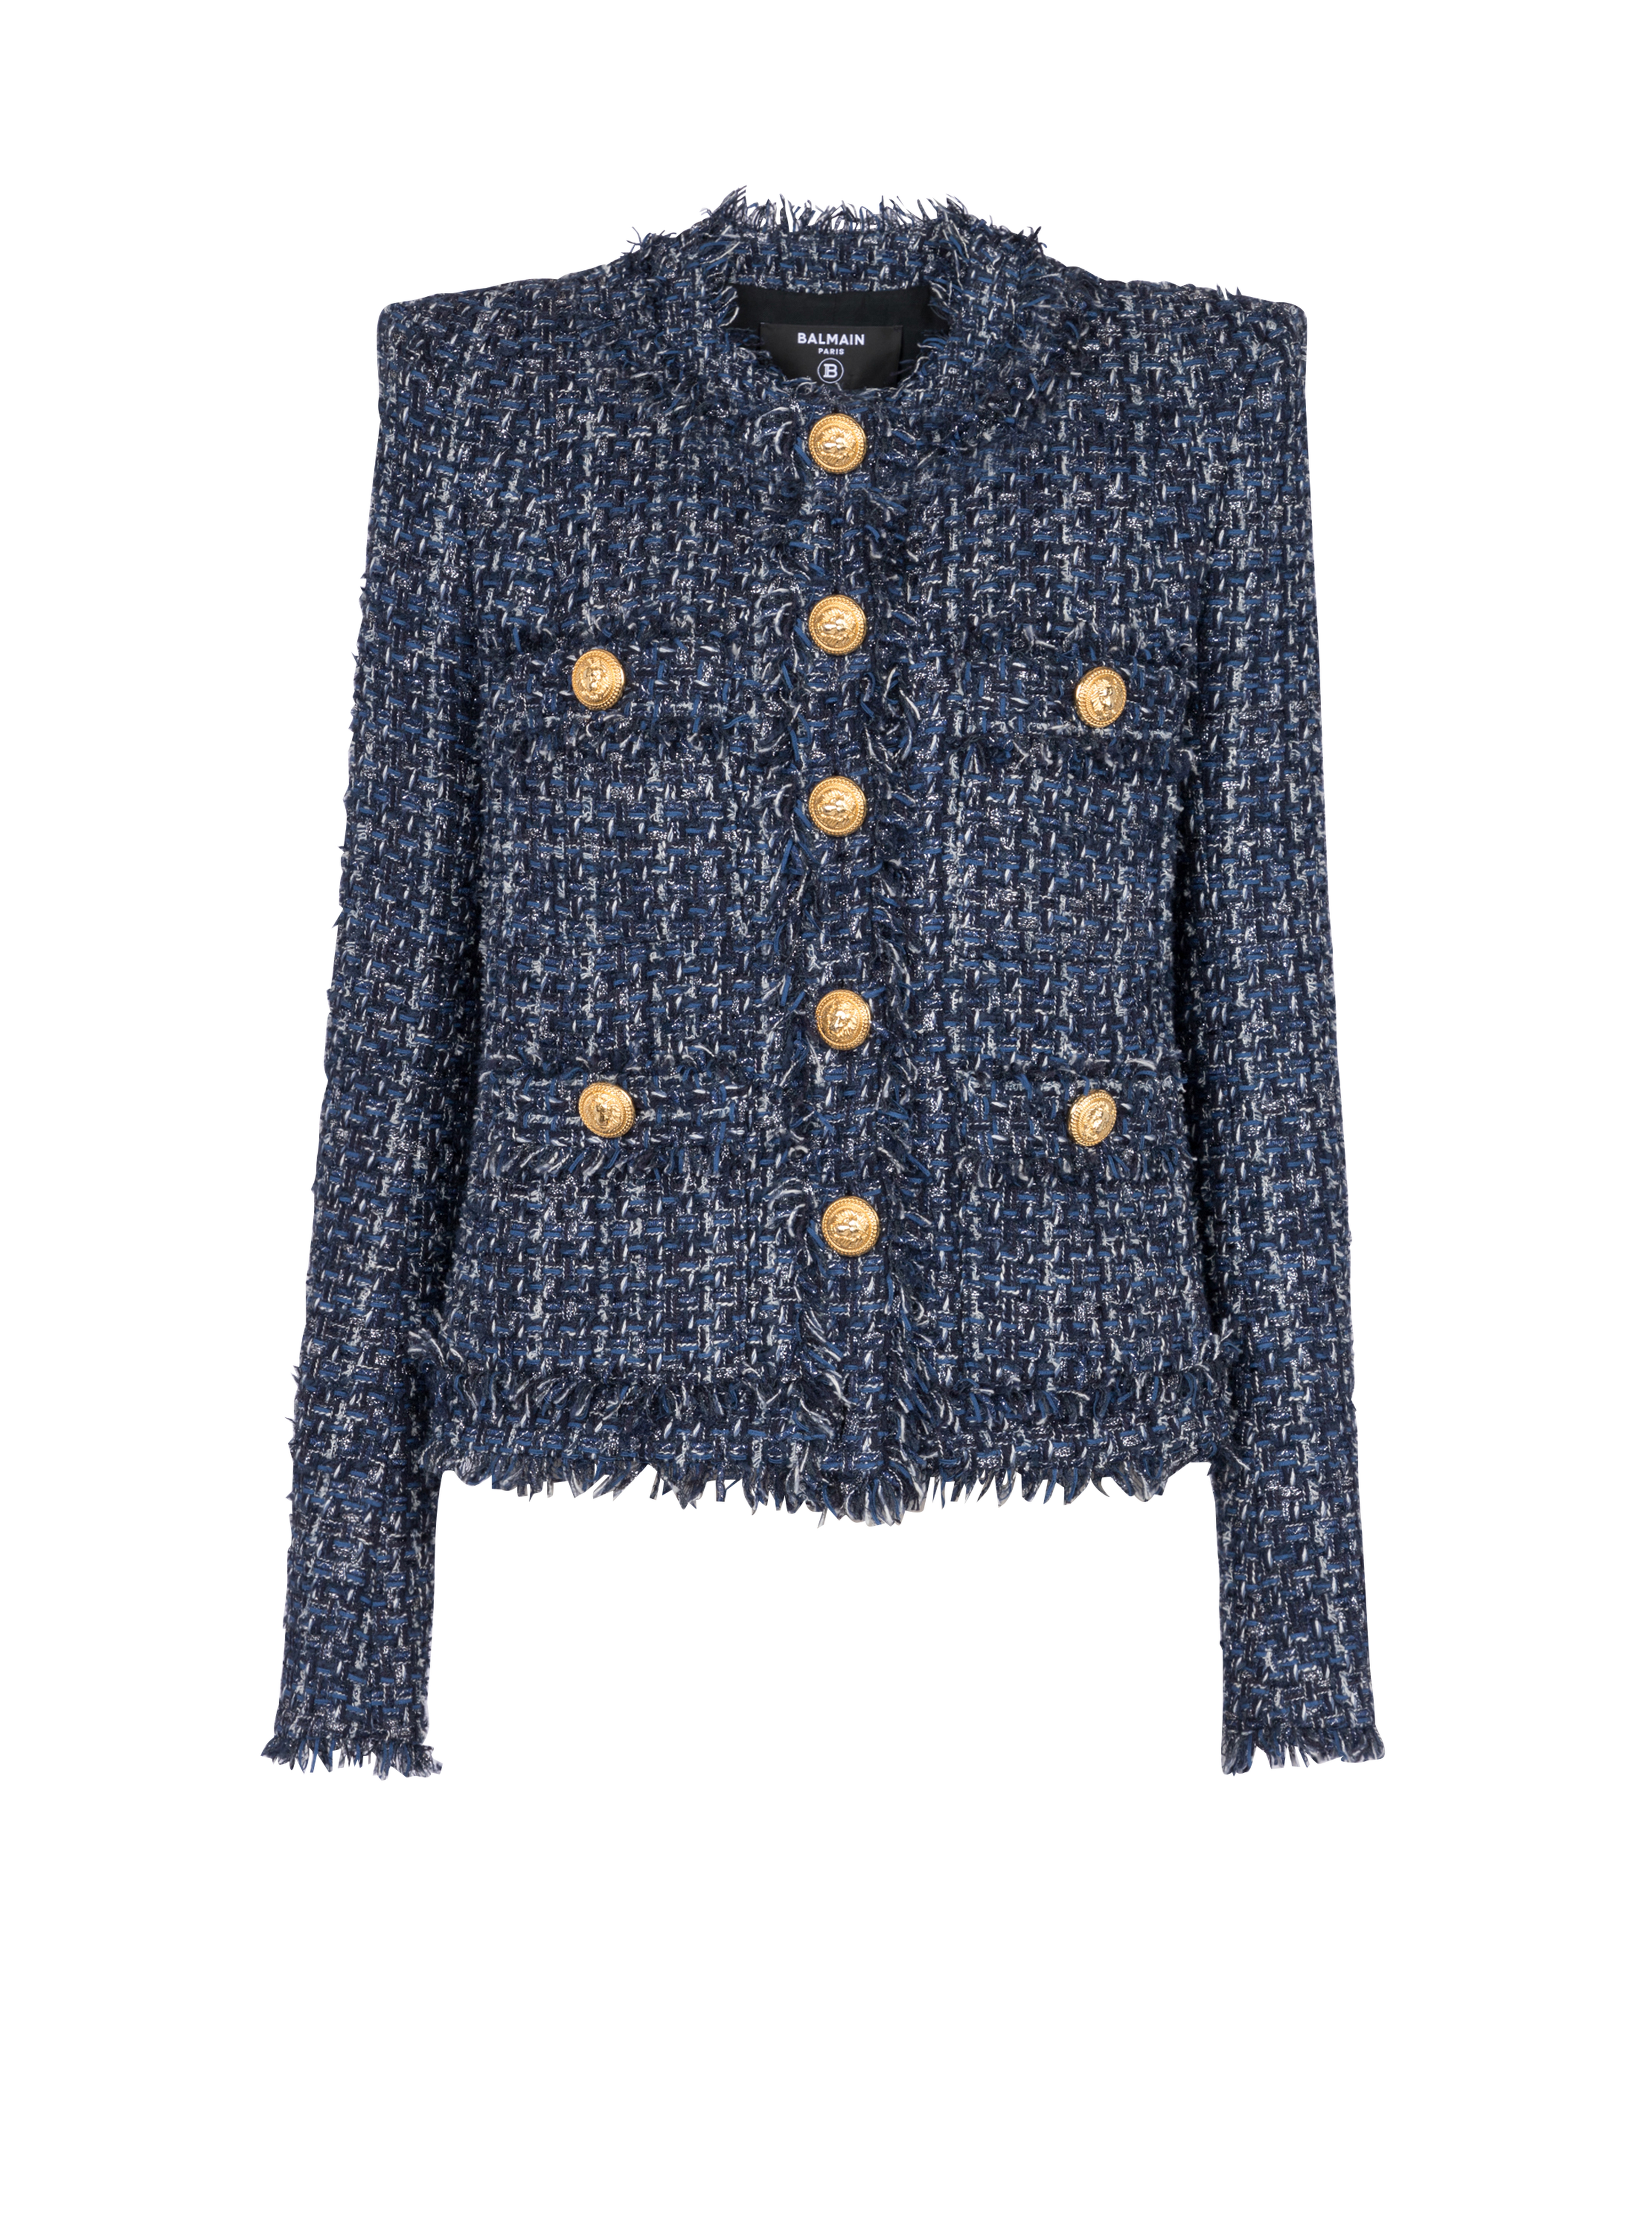 Tweed jacket, navy